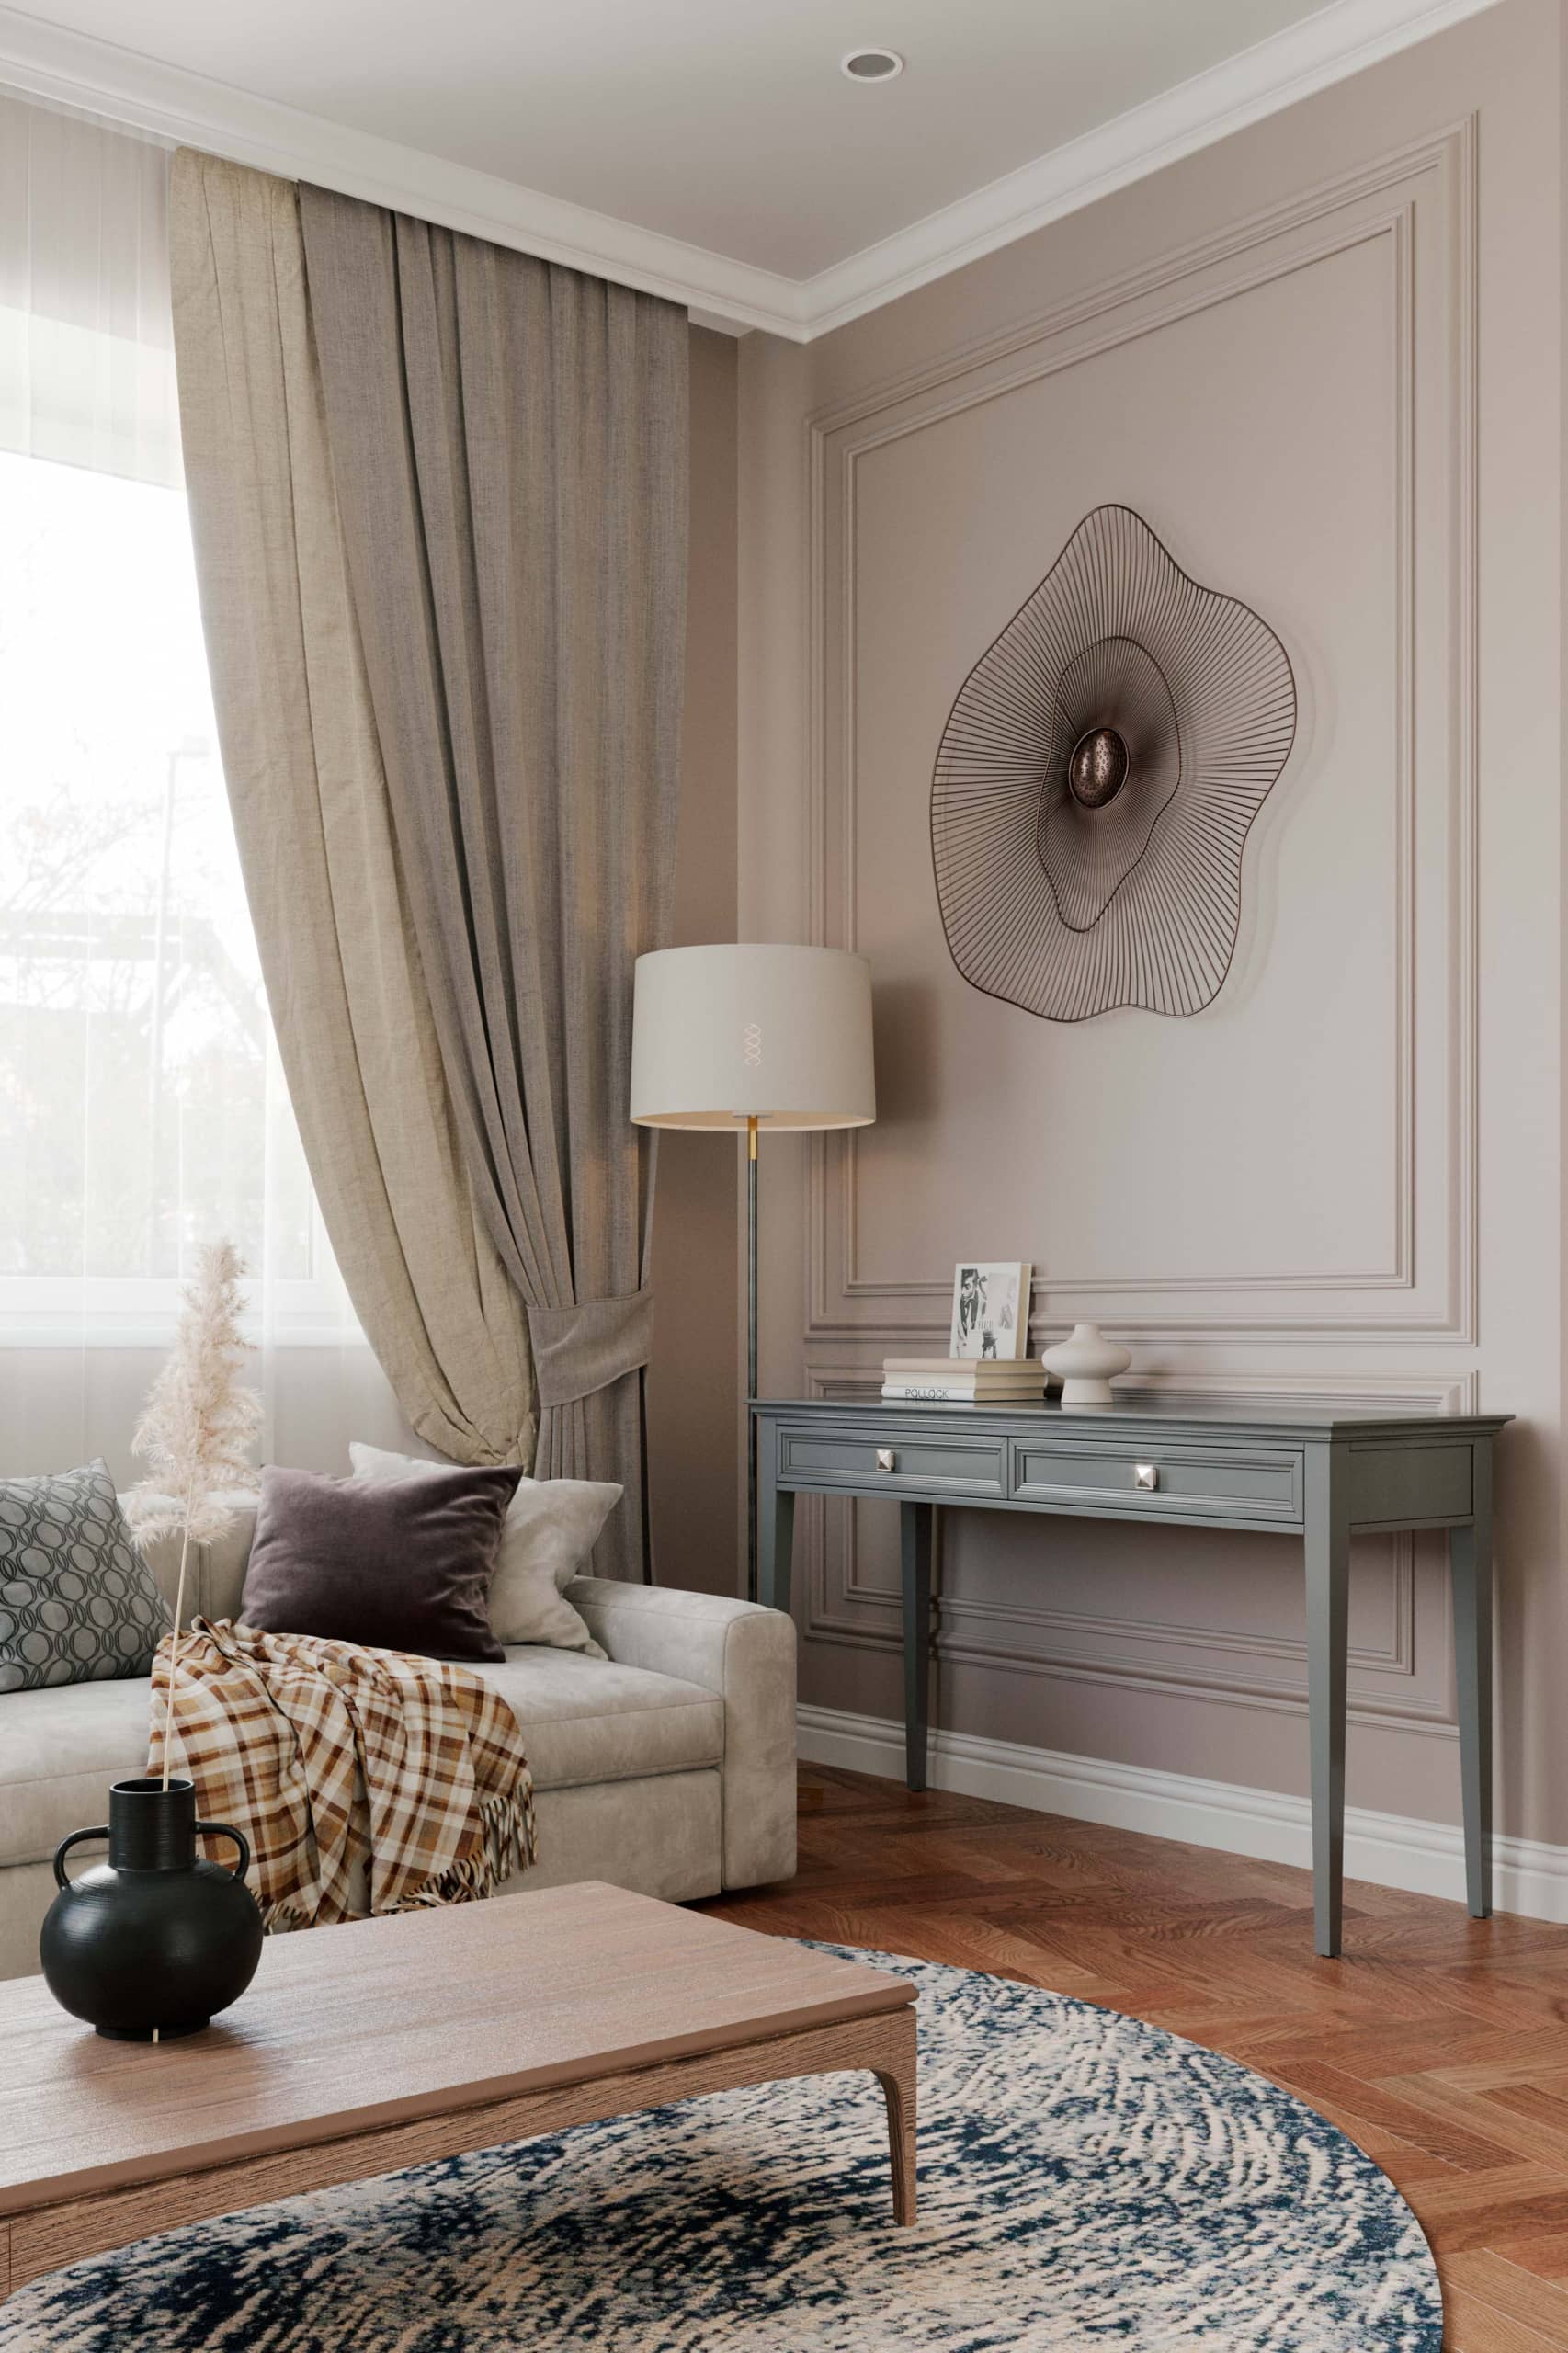 Оформление интерьера гостиной трехкомнатной квартиры в коричневый цвет в стиле современной классики. Фото № 62284.